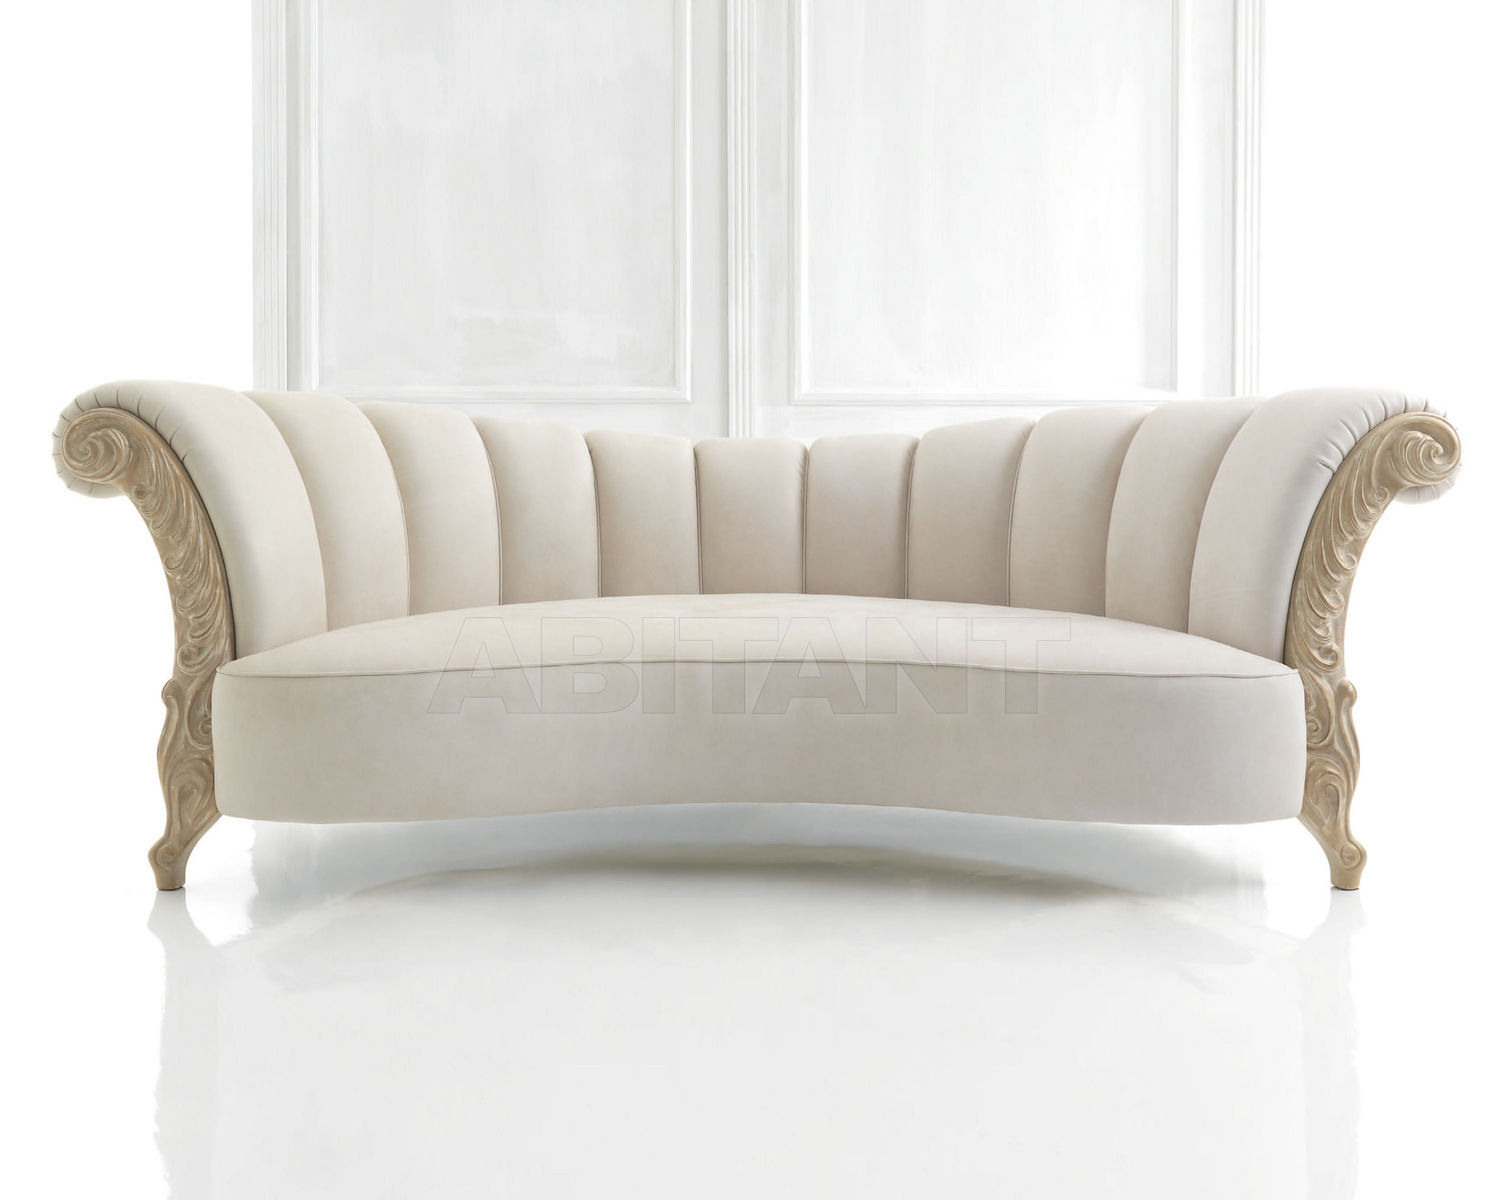 White unique. Диван белый классика. Диван классический на белом фоне. Маленький диван в классическом стиле. Диван в римском стиле.